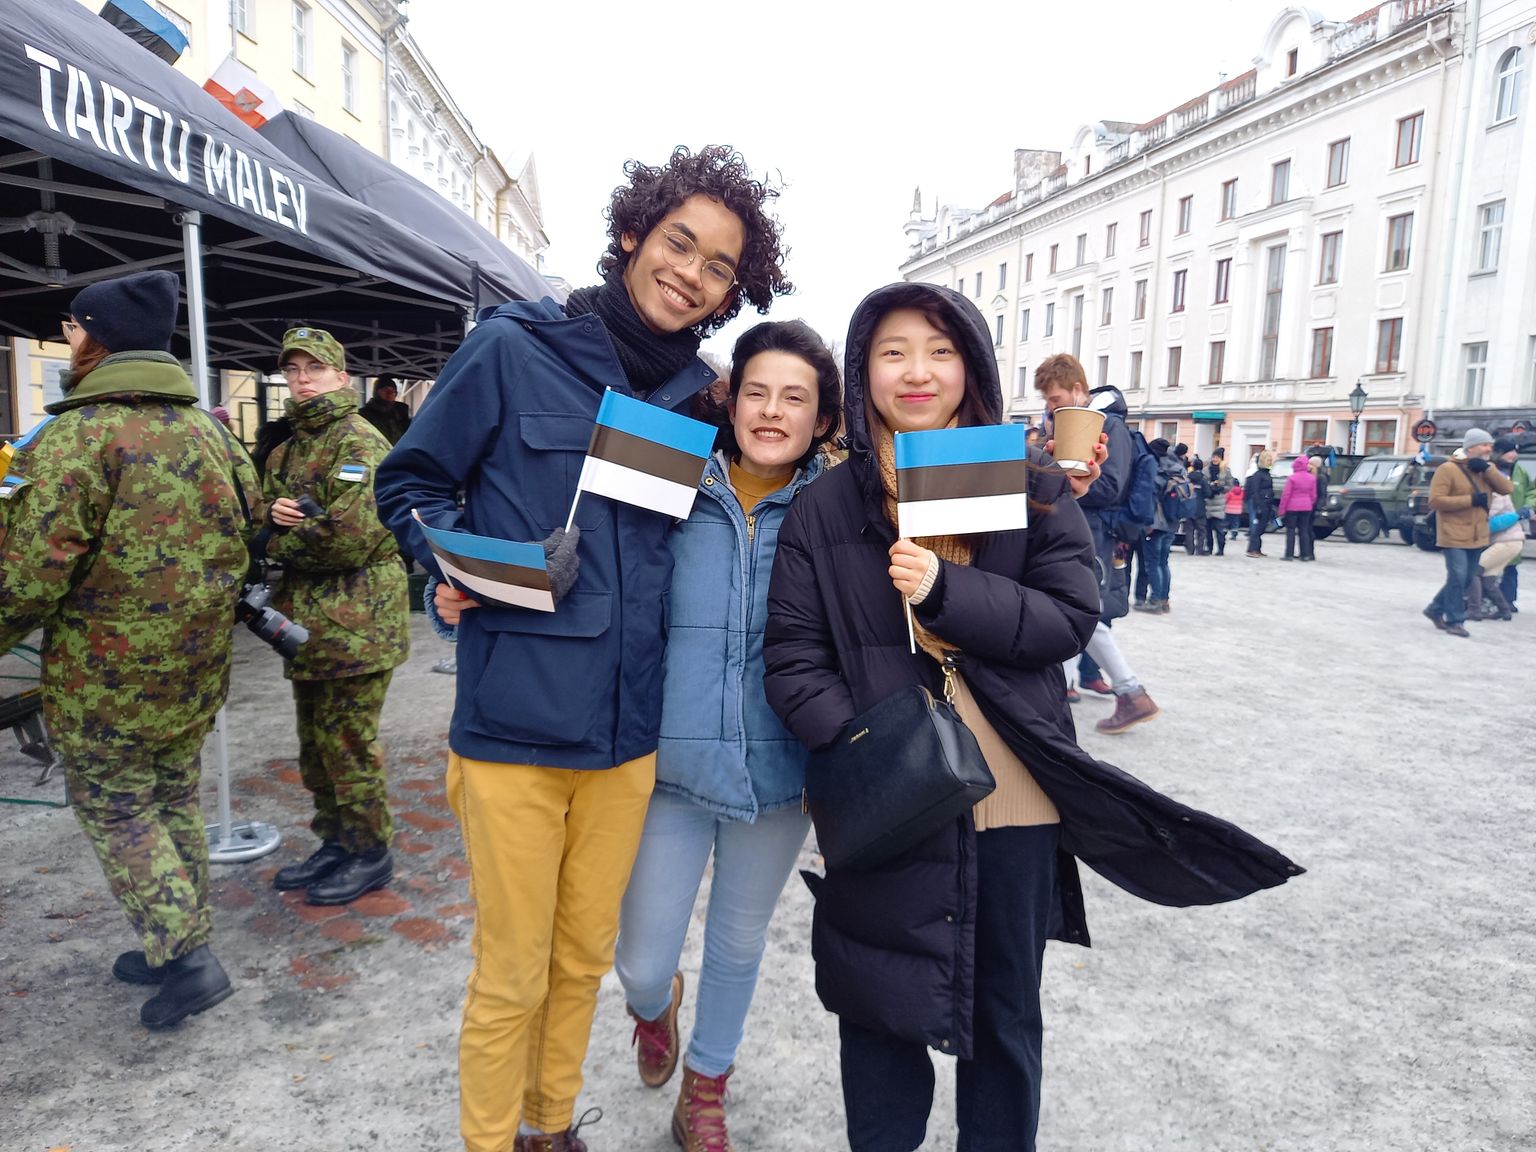 Tartus õppivad välistudengid Hazzar Reyes (vasakult), Denisse Avella ja Juyeon Seo tunnevad end Eestis turvaliselt.